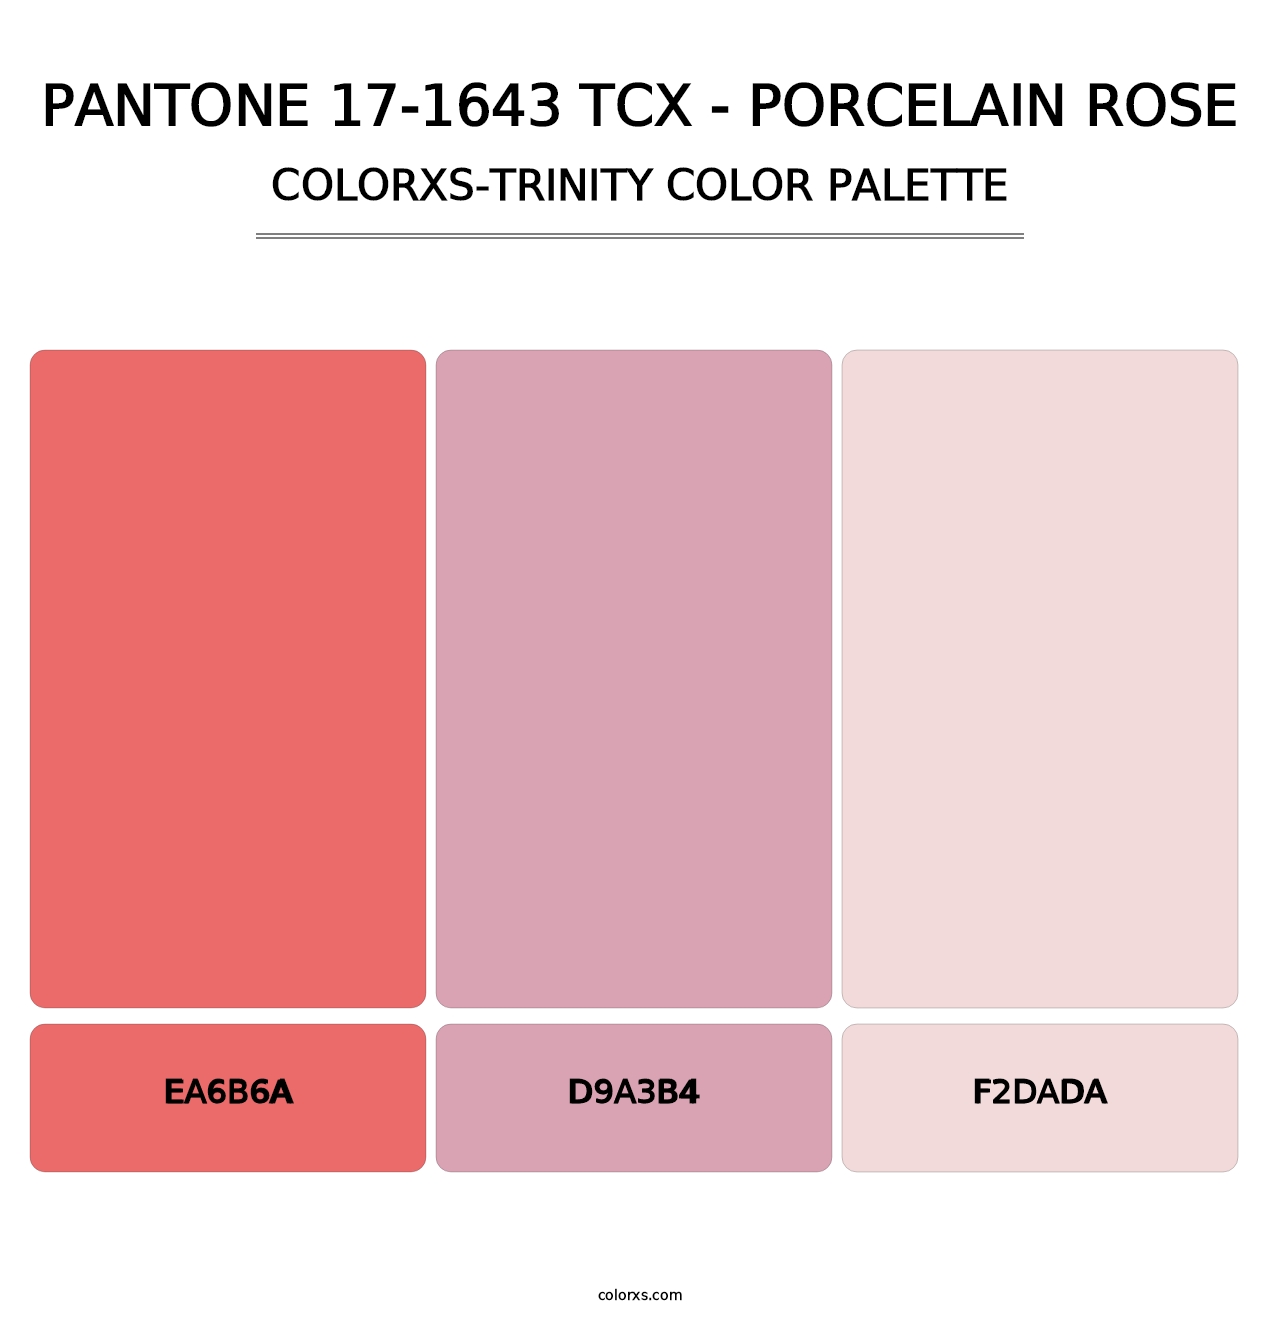 PANTONE 17-1643 TCX - Porcelain Rose - Colorxs Trinity Palette